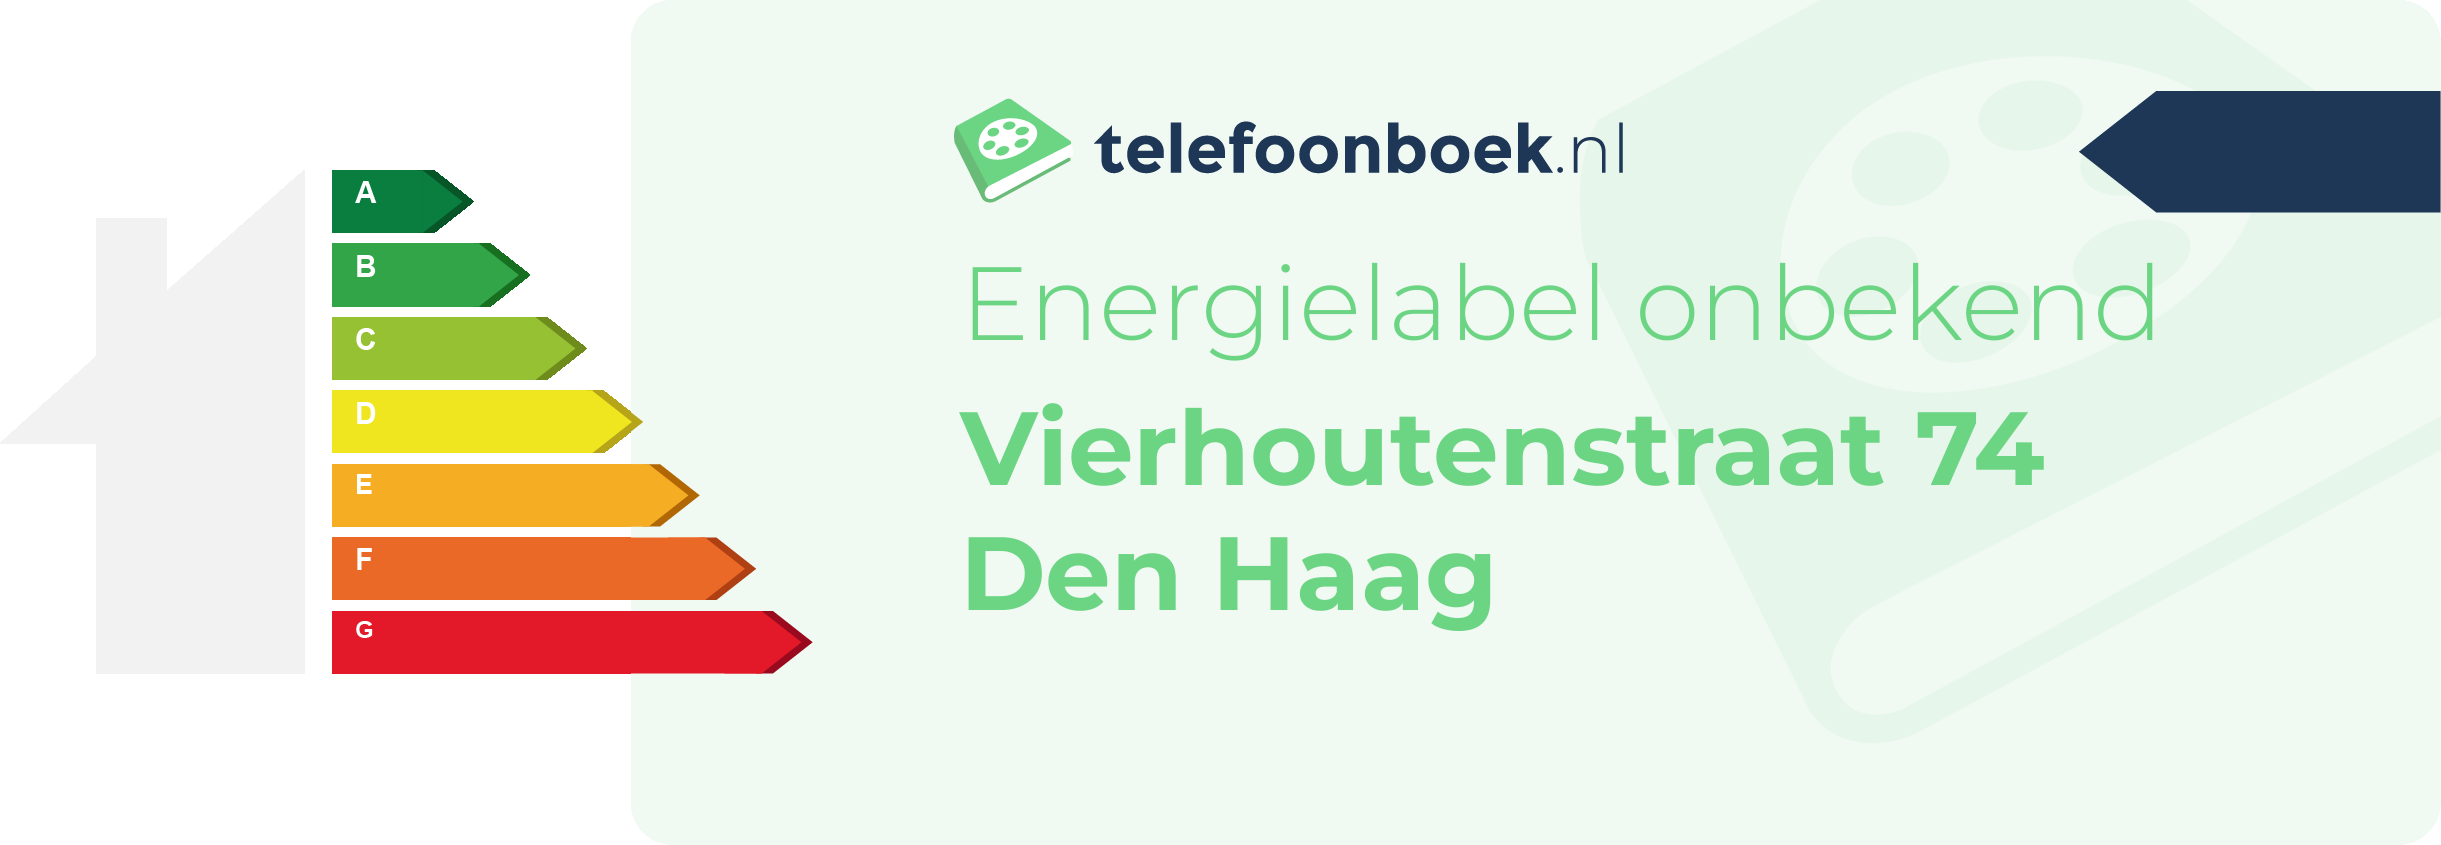 Energielabel Vierhoutenstraat 74 Den Haag